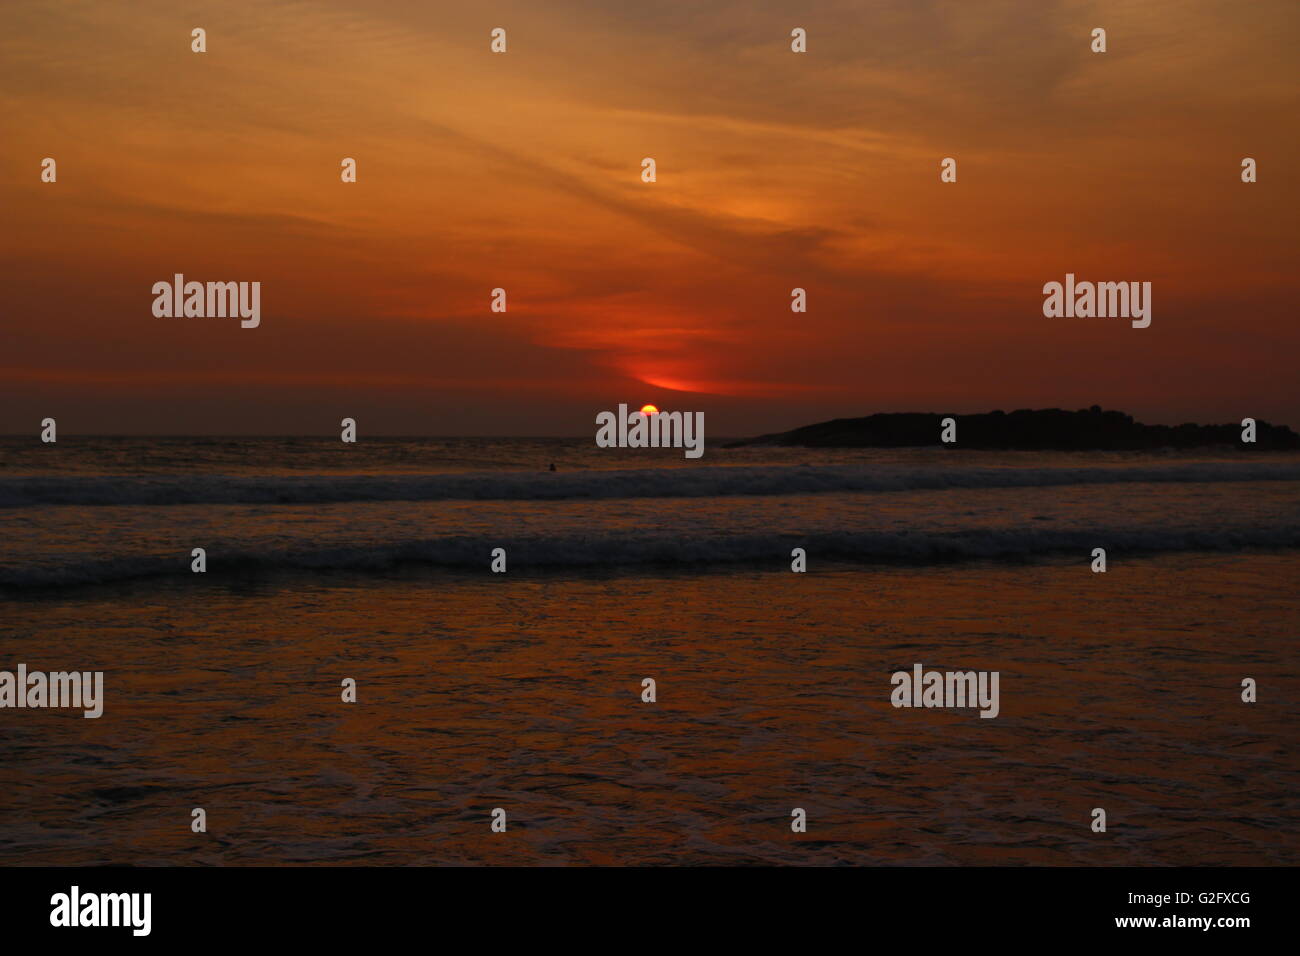 Hermoso paisaje del amanecer y atardecer Indian Beach View Foto de stock